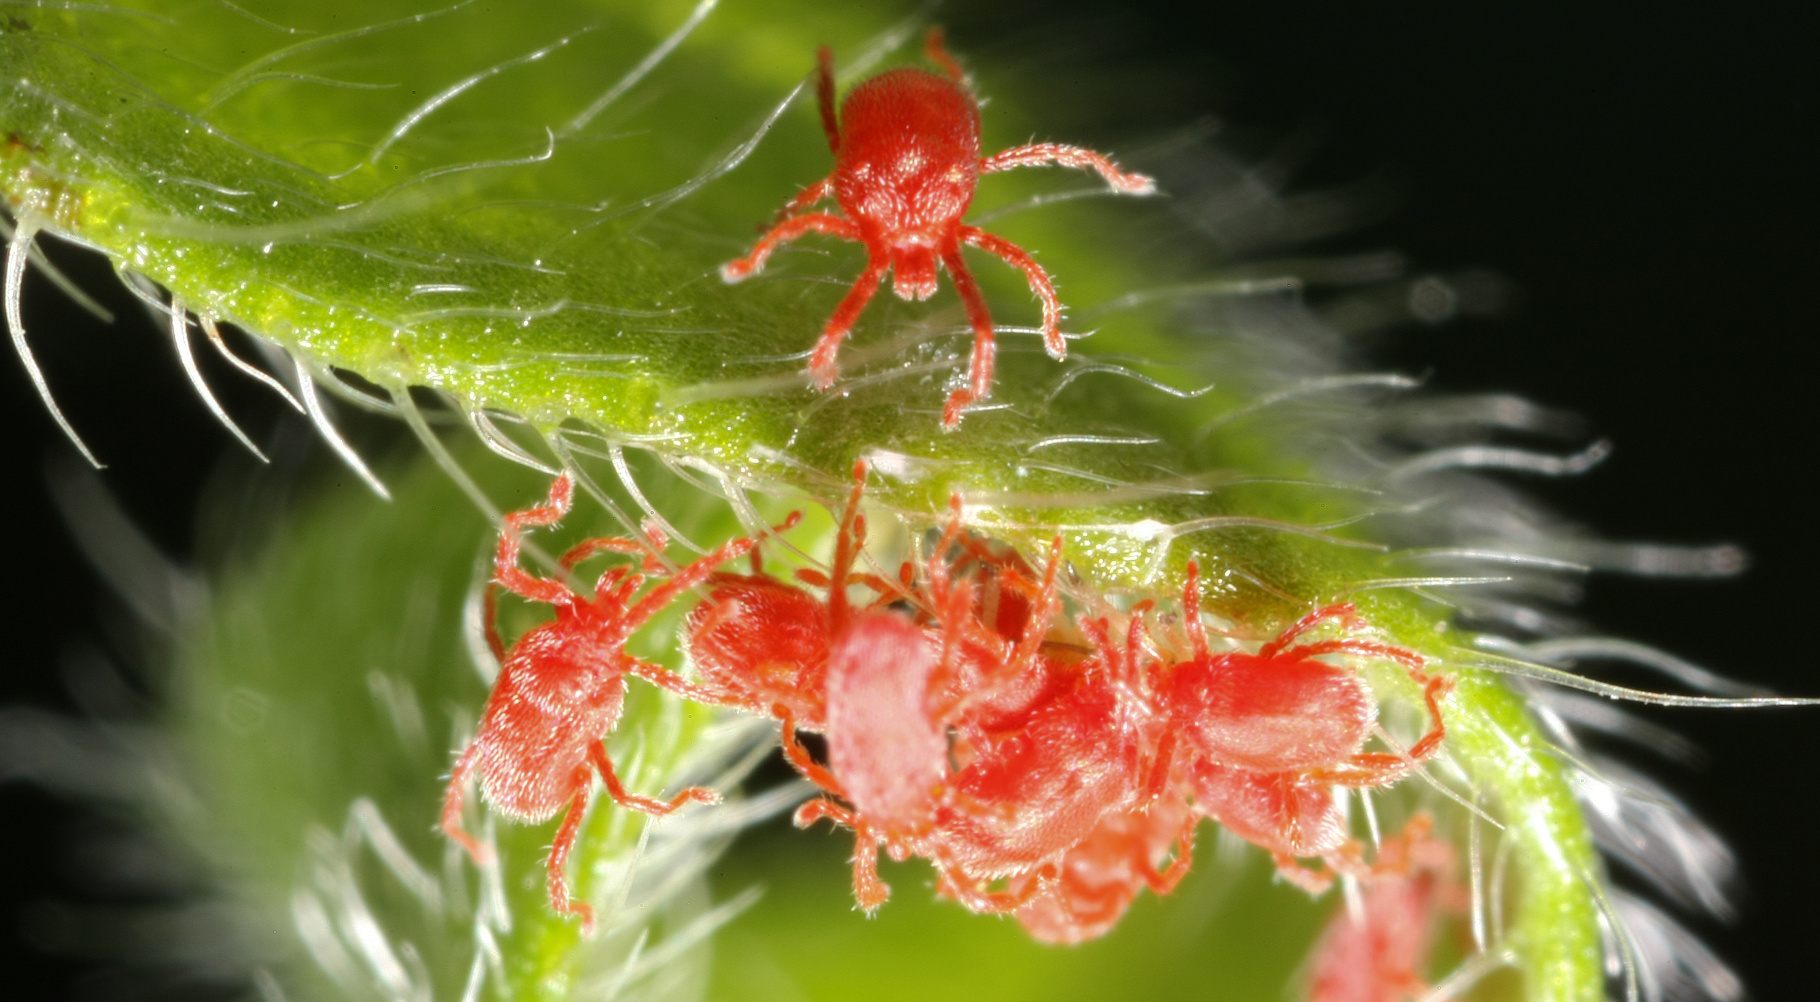 L'araignée rouge possède huit pattes et n'est donc pas un insecte (qui en a toujours six). On peut ainsi distinguer l'araignée rouge de la cochenille, autre parasite des végétaux. C'est un acarien, cousin des araignées. © chuc.de, Fotolia